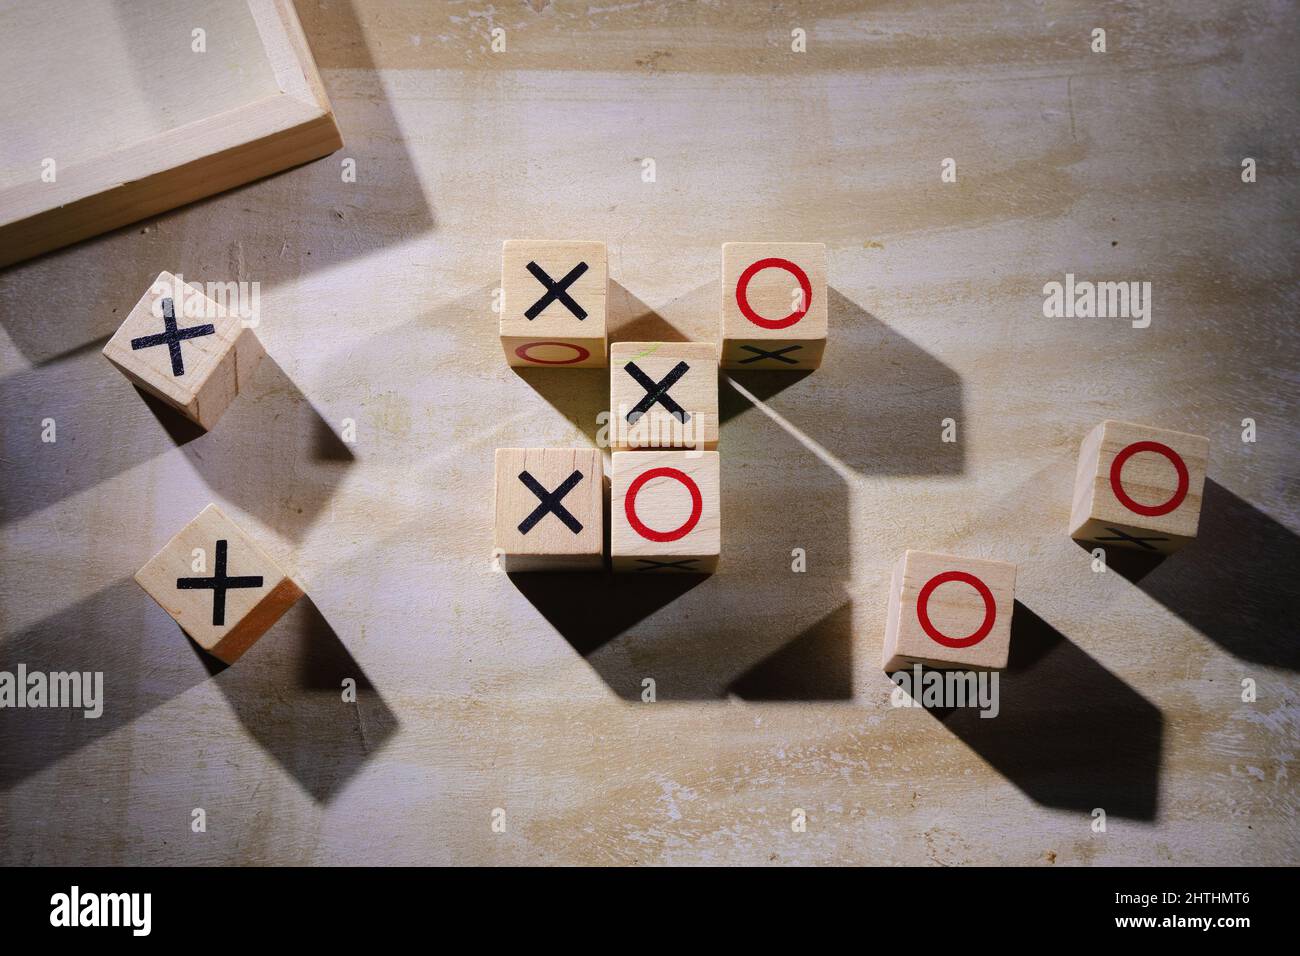 Dettagli del gioco XO, un'altra mossa e X sarà un vincitore. Foto Stock